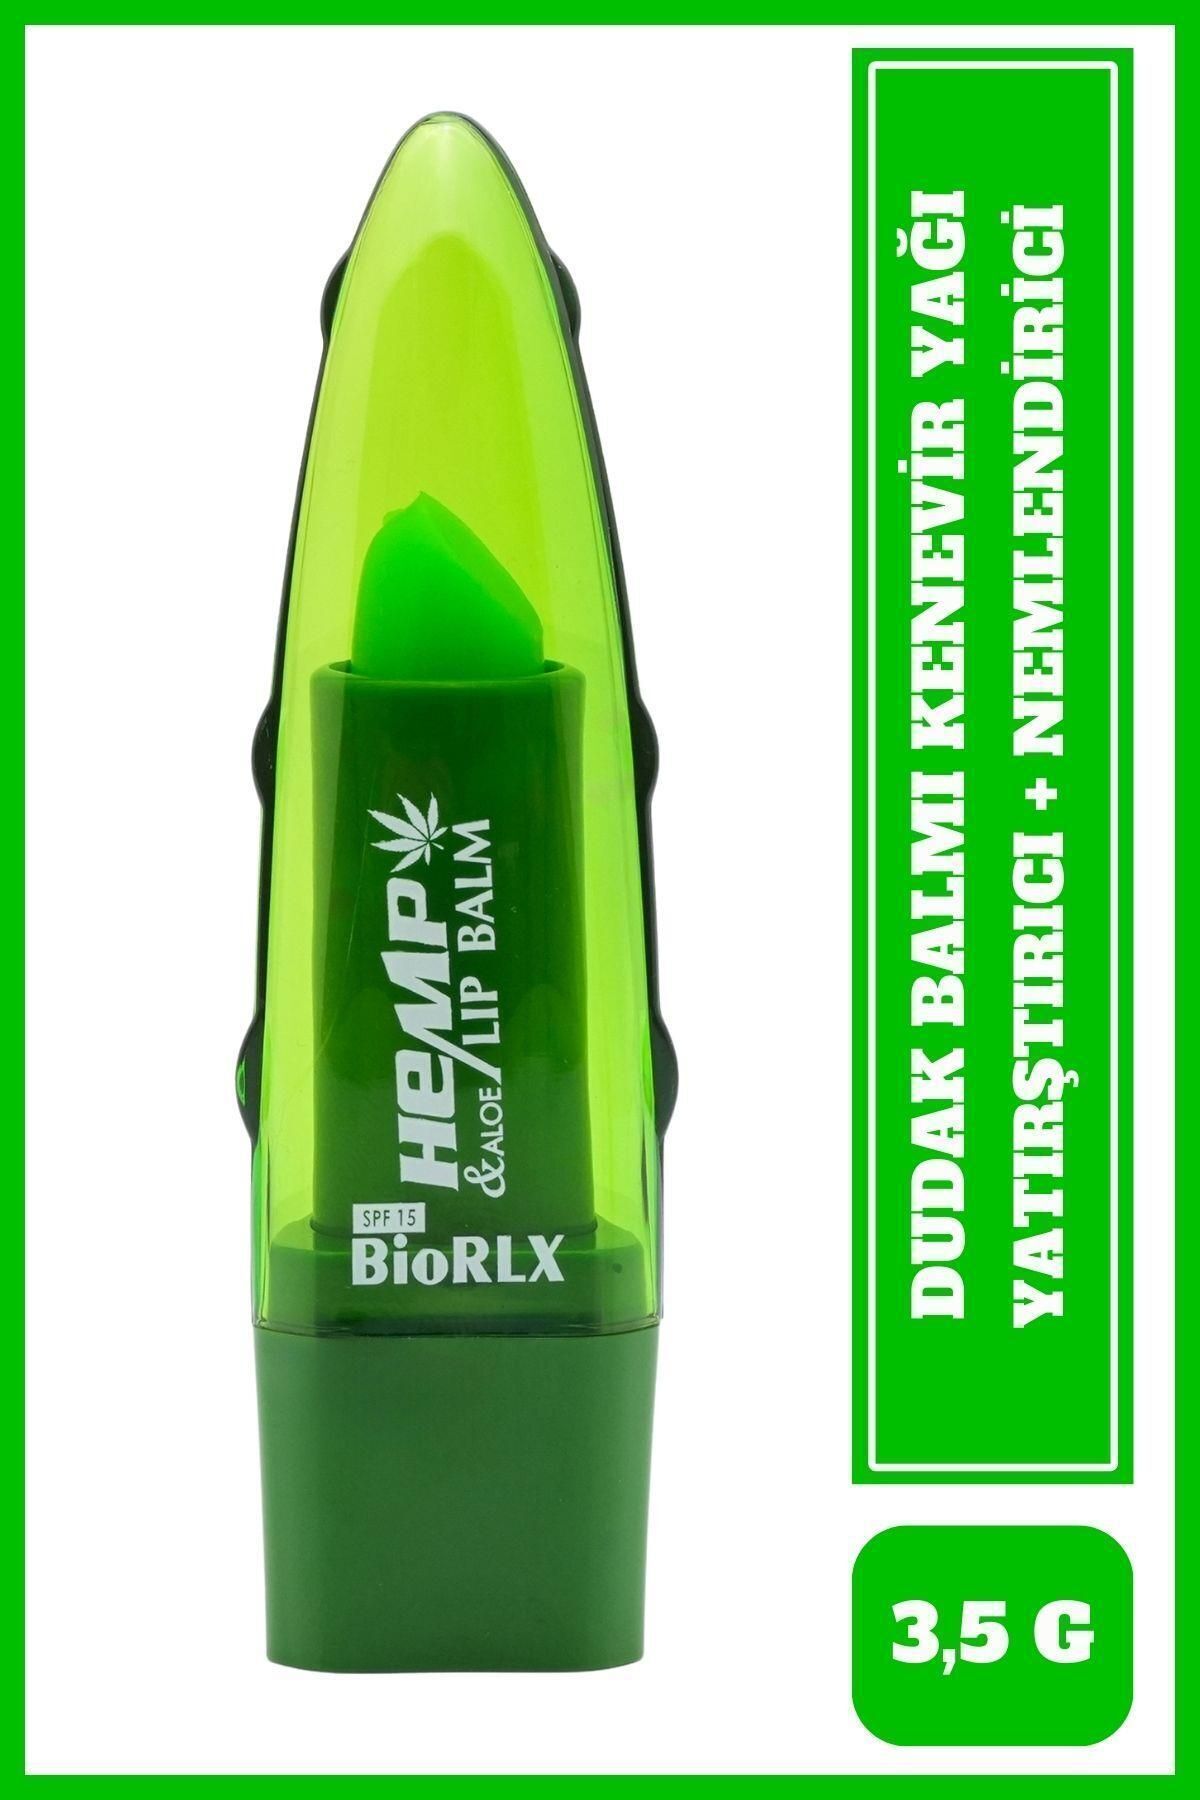 BioRLX Dudak Balmı Aloe Vera Kenevir Yağı Spf Yatıştırıcı Renksiz Dudak Bakım 3,5 G